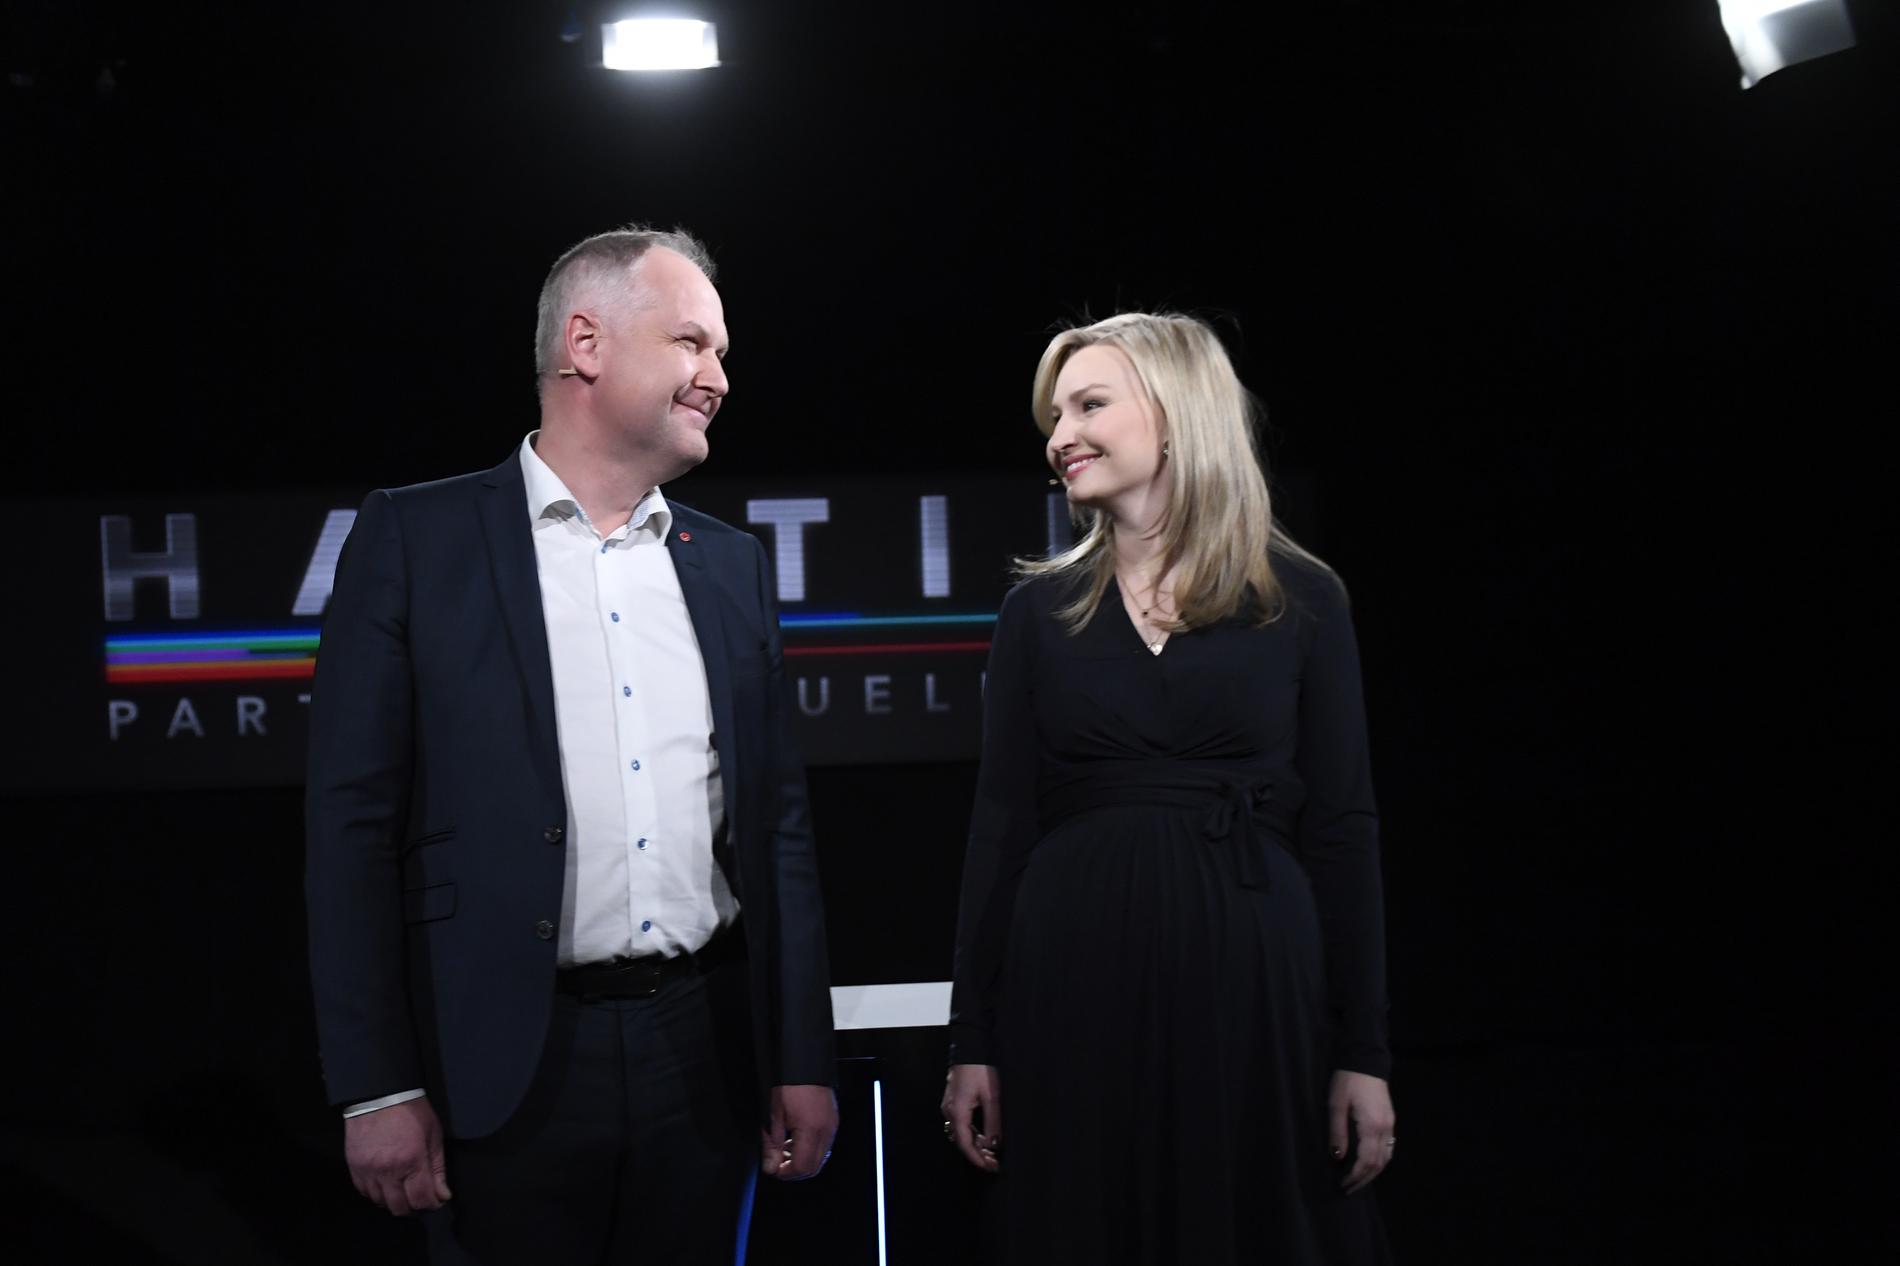 Vänsterpartiets partiledare Jonas Sjöstedt och Kristdemokraternas partiledare Ebba Busch Thor. KD och V är de riksdagspartier som stärks mest i DN/Ipsos senaste mätning. Arkivbild.